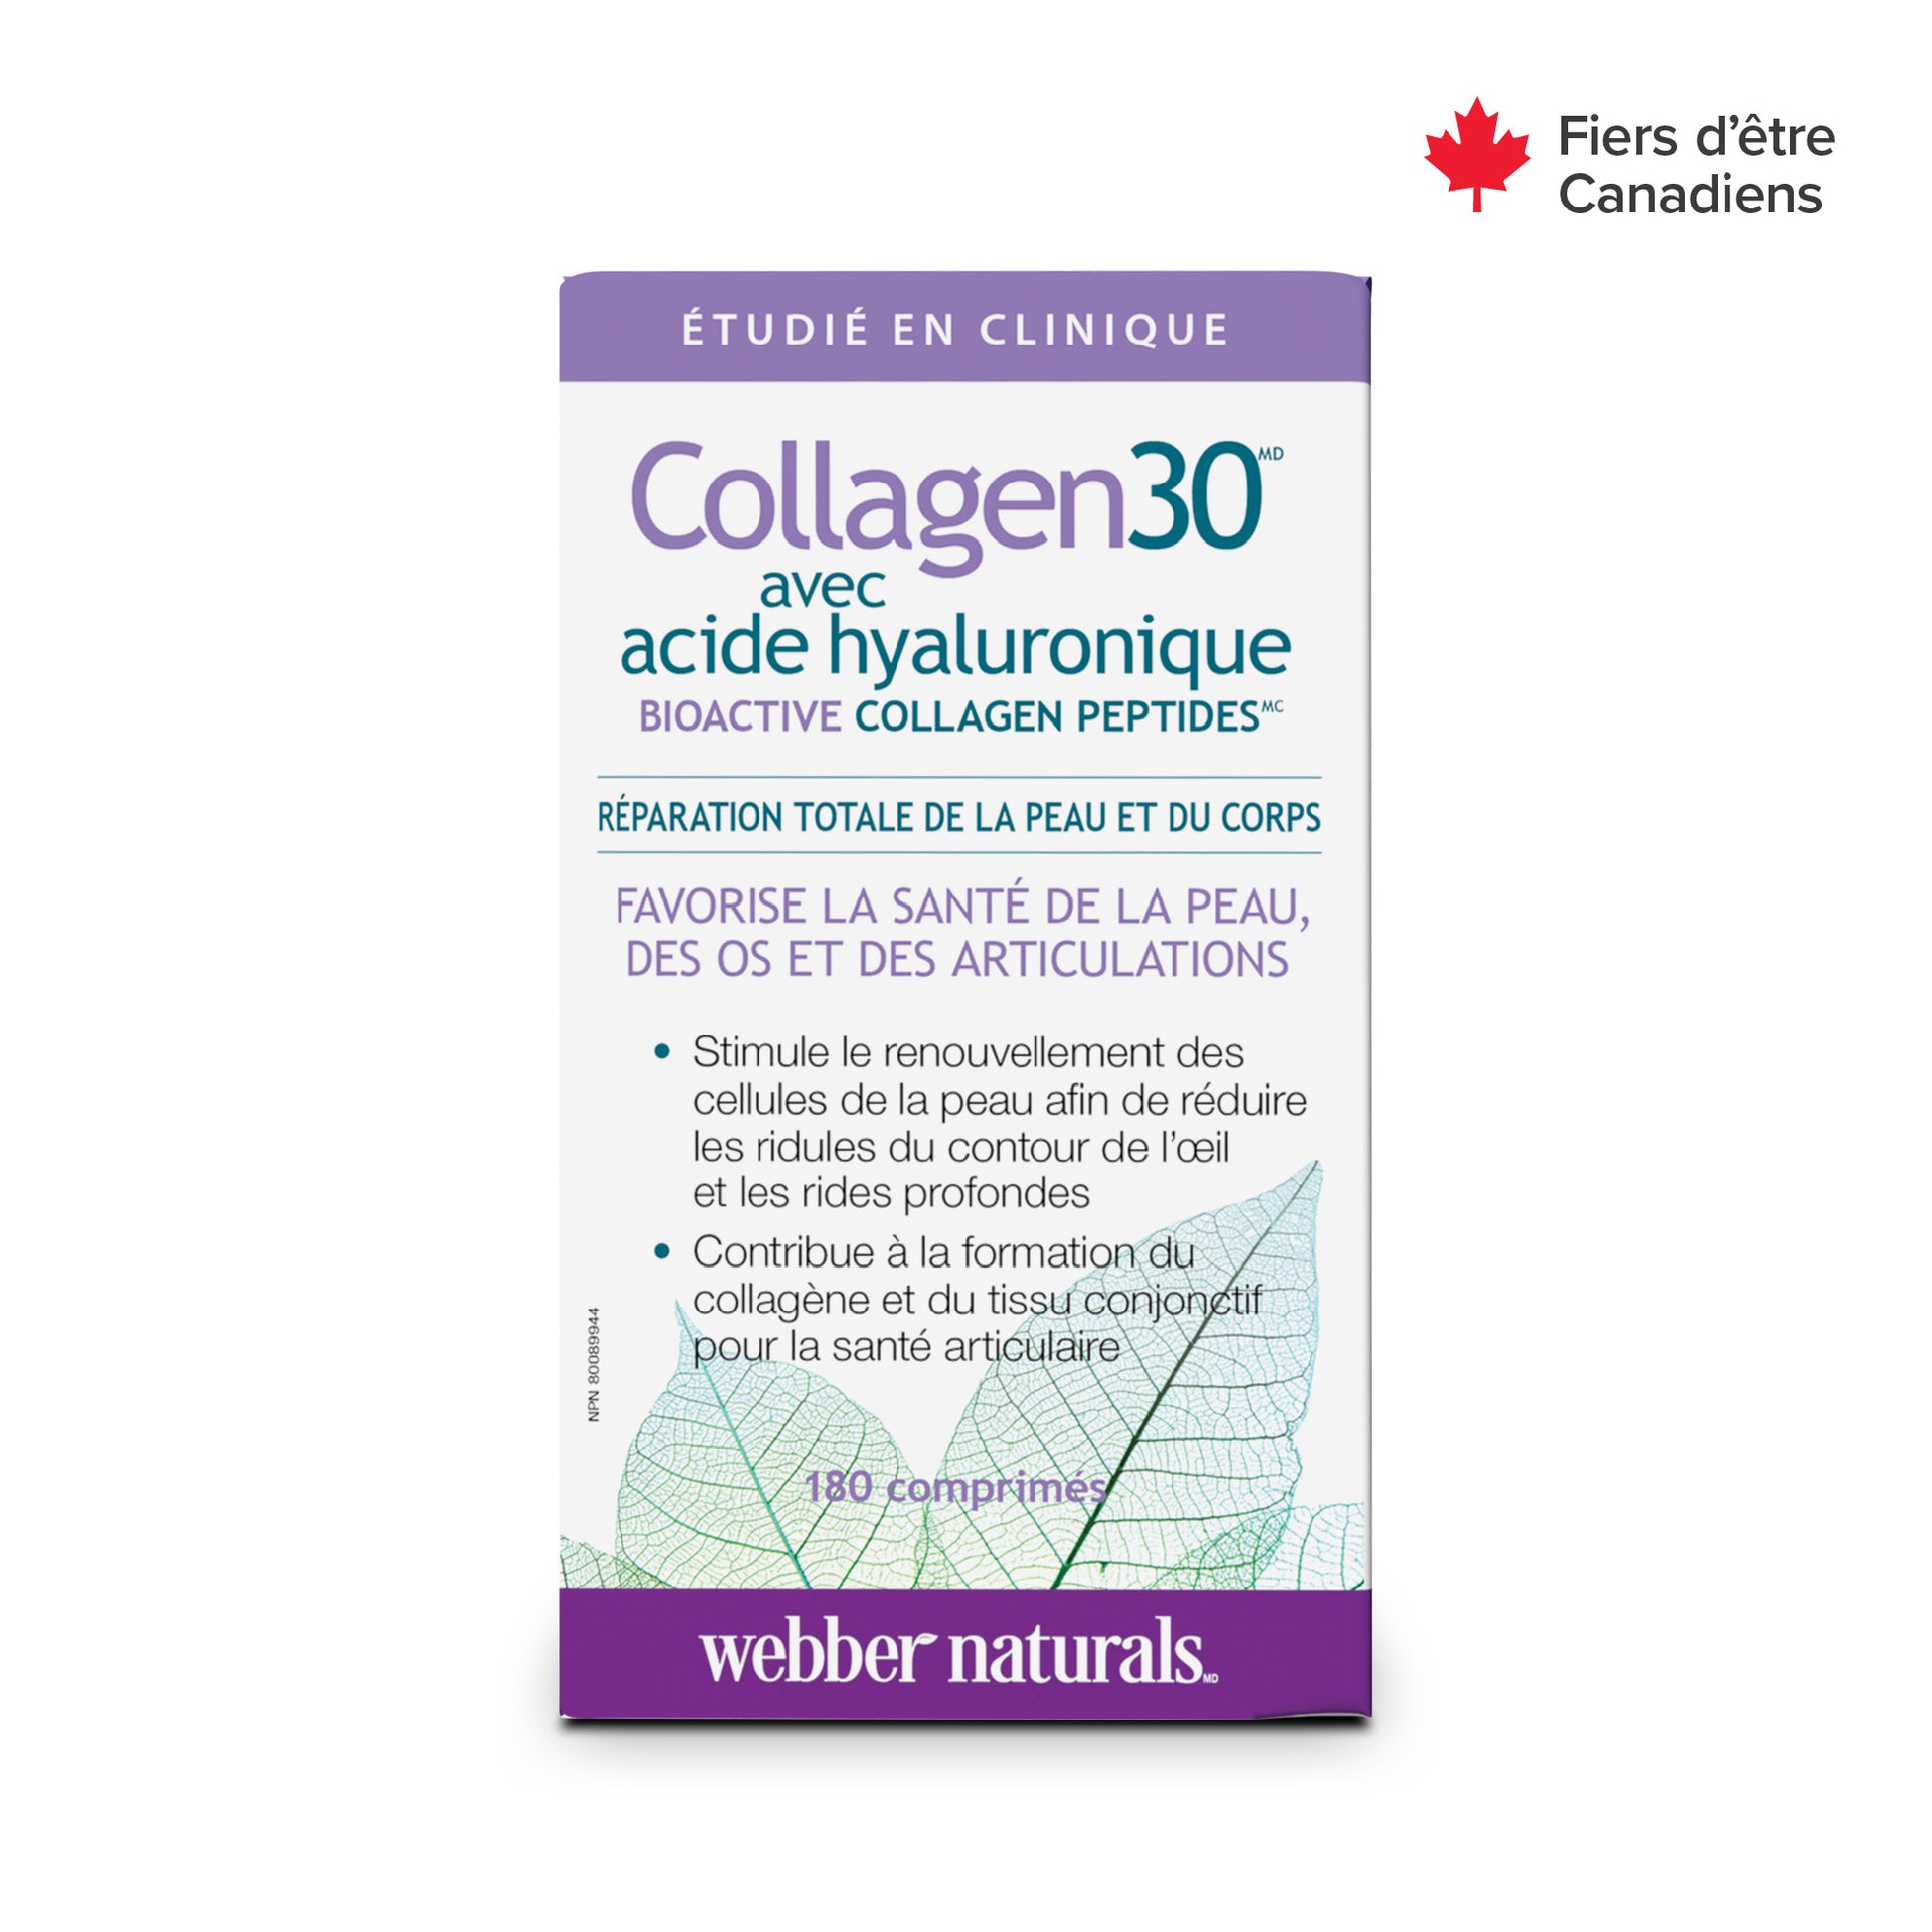 Collagen30® with Hyaluronic Acid Bioactive Collagen Peptides for Webber Naturals|v|hi-res|WN3664